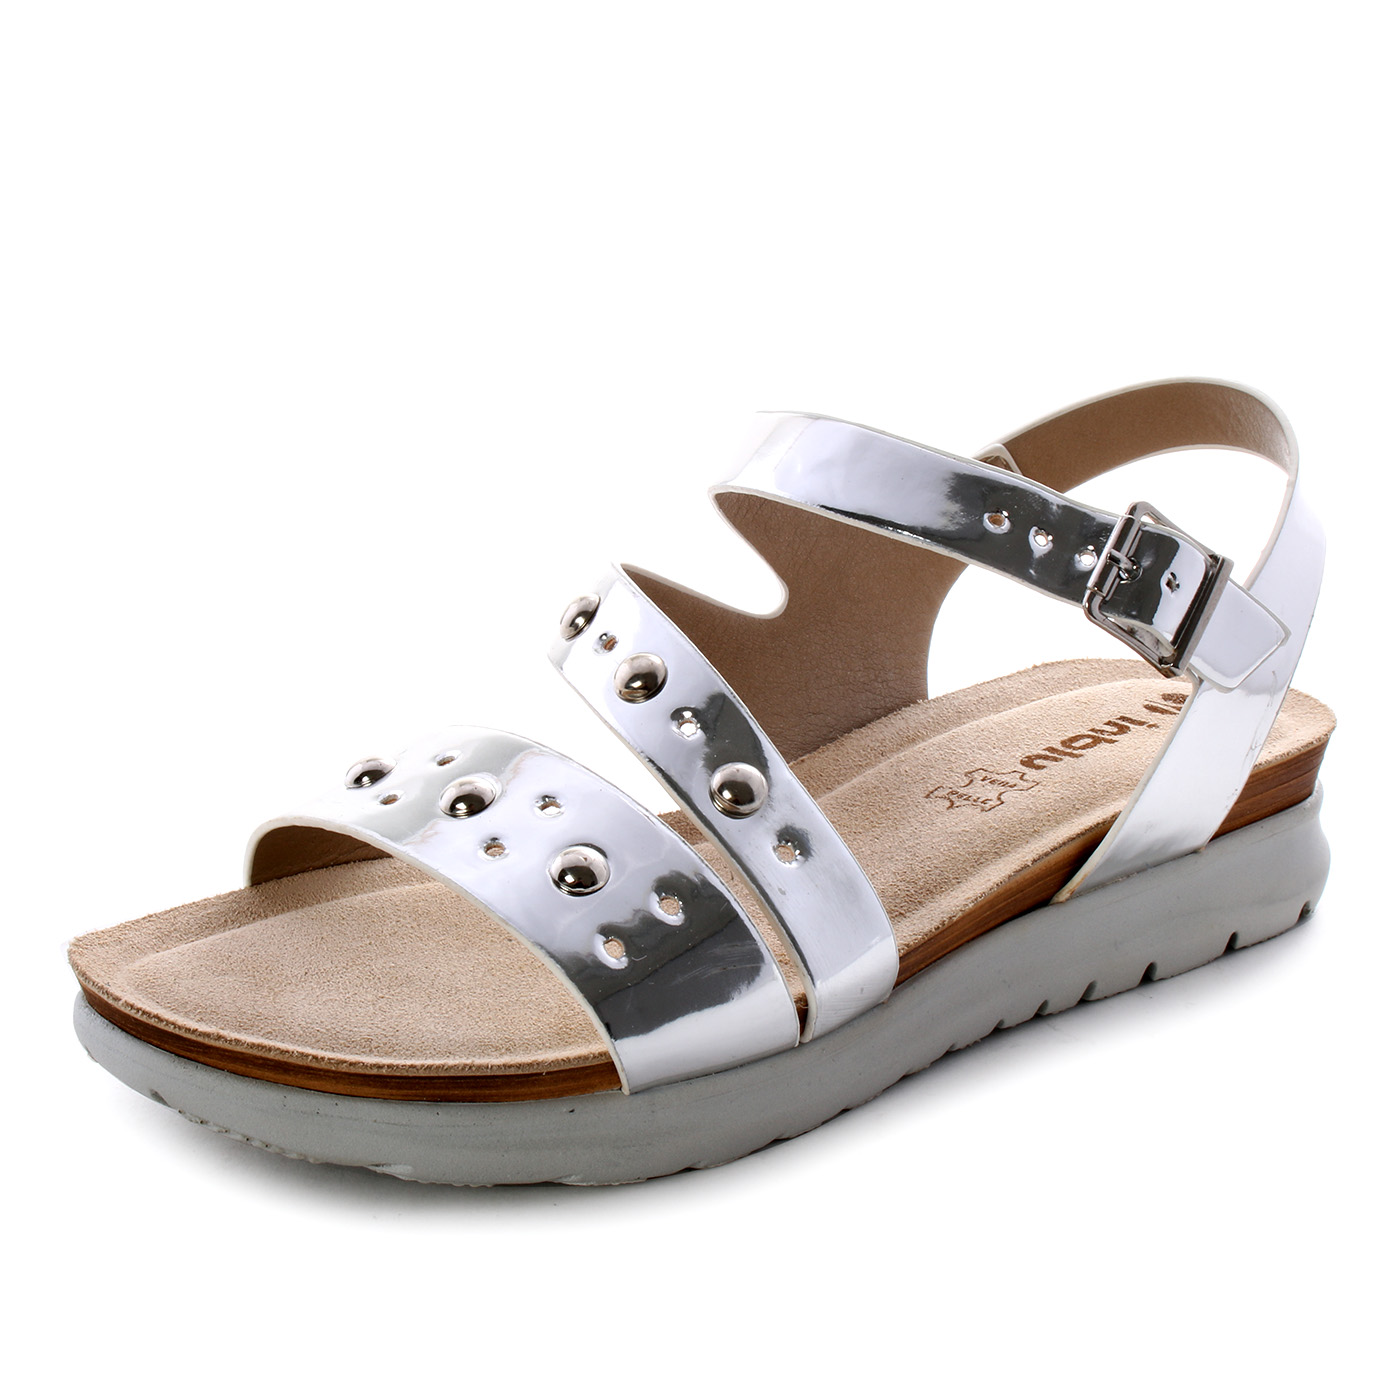 Inblu - Sandali aperti metallizati con borchie da donna - Argento, Grigio -  MitShopping - Abbigliamento e scarpe